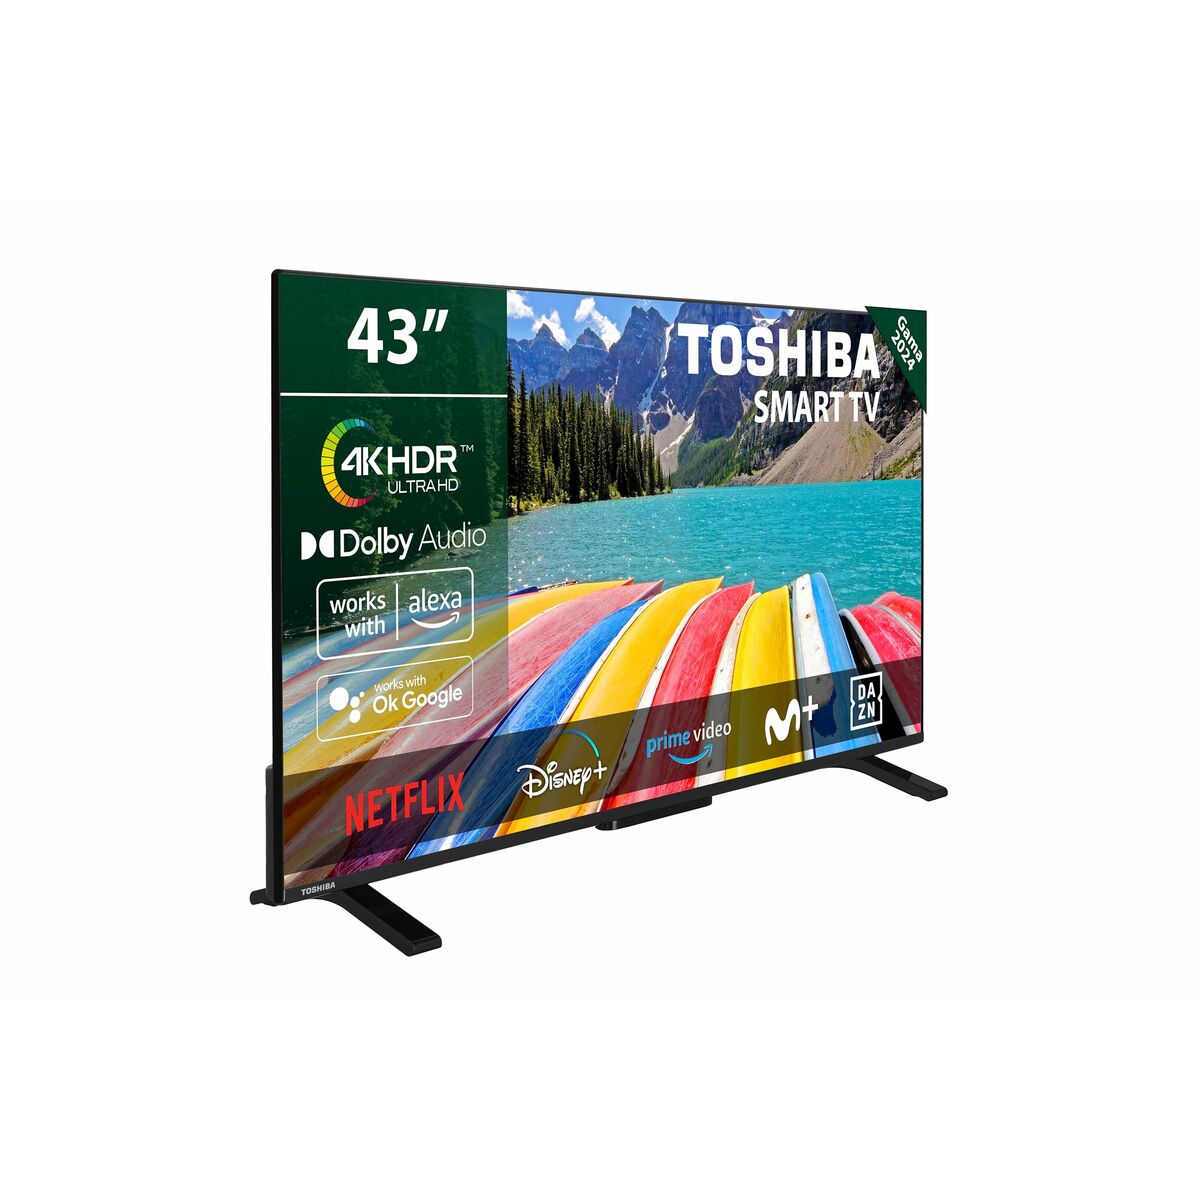 Smart TV Toshiba 40LV2E63DG 4K Ultra HD 43" LED